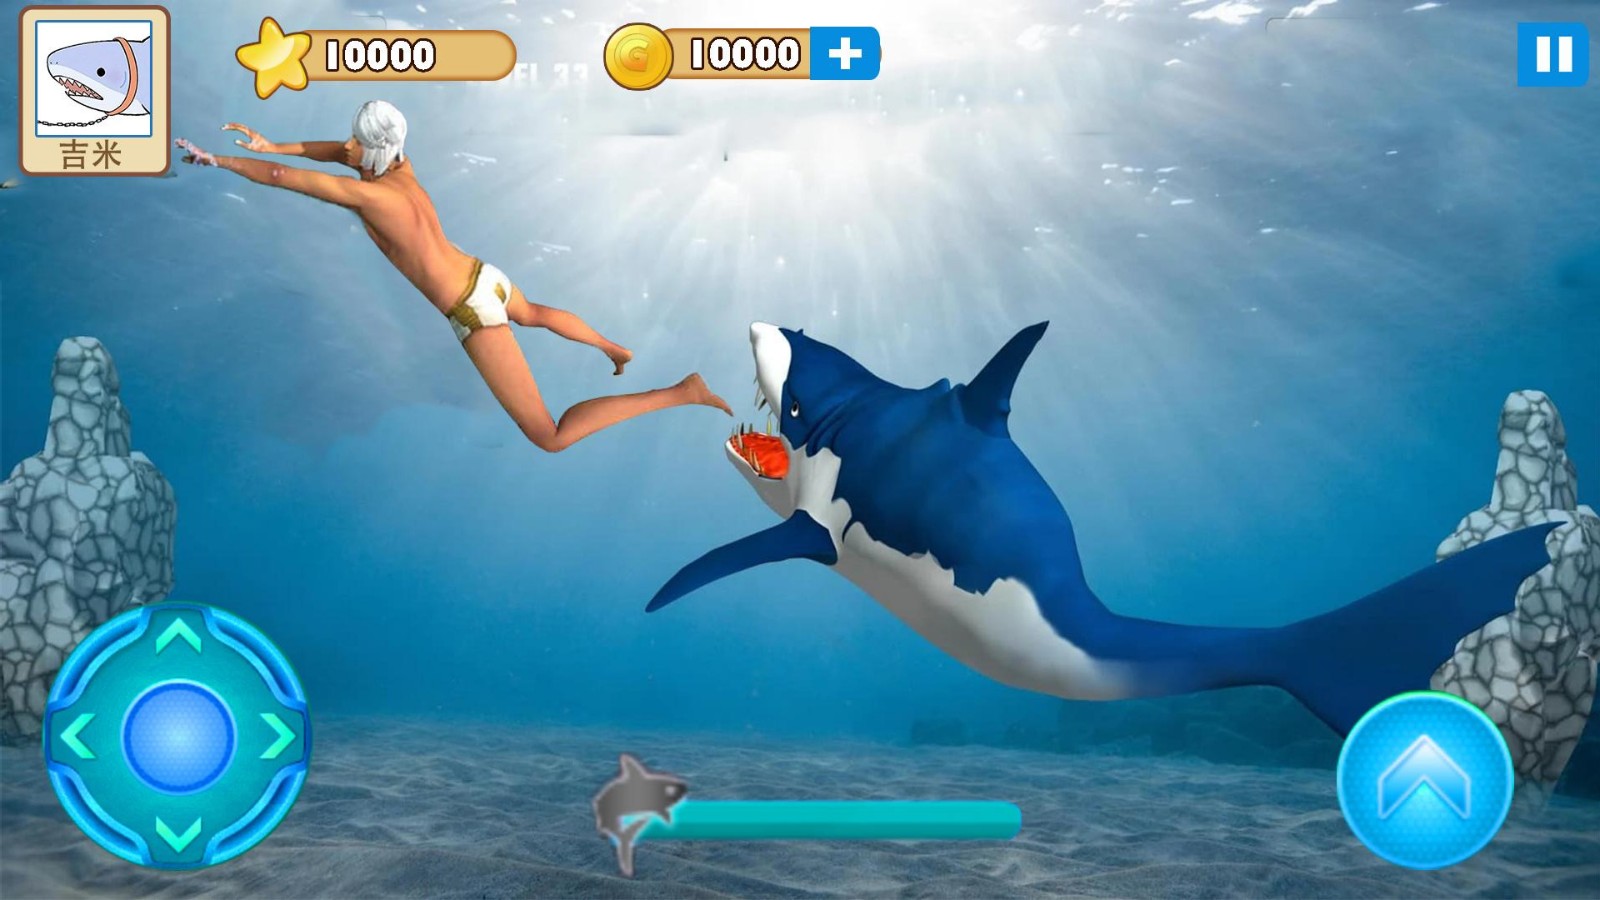 大白鲨真实模拟好玩吗 大白鲨真实模拟玩法简介